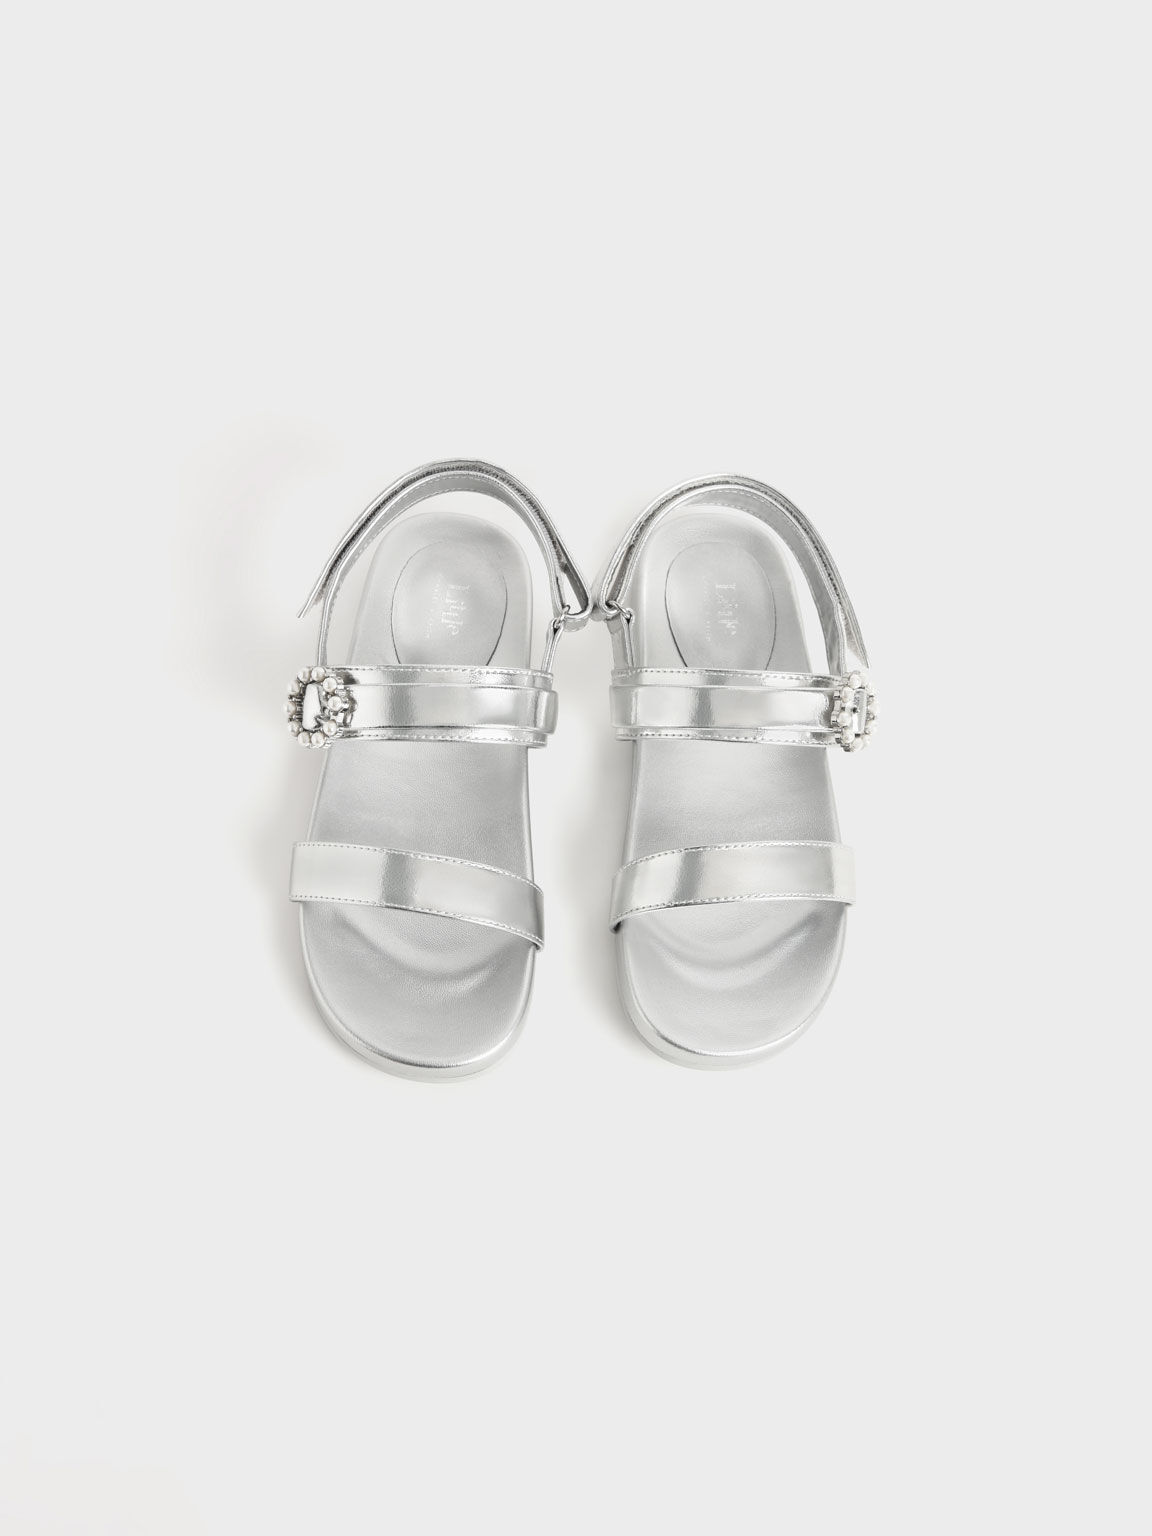 Girls' Bead-Embellished Back-Strap Sandals, Silver, hi-res